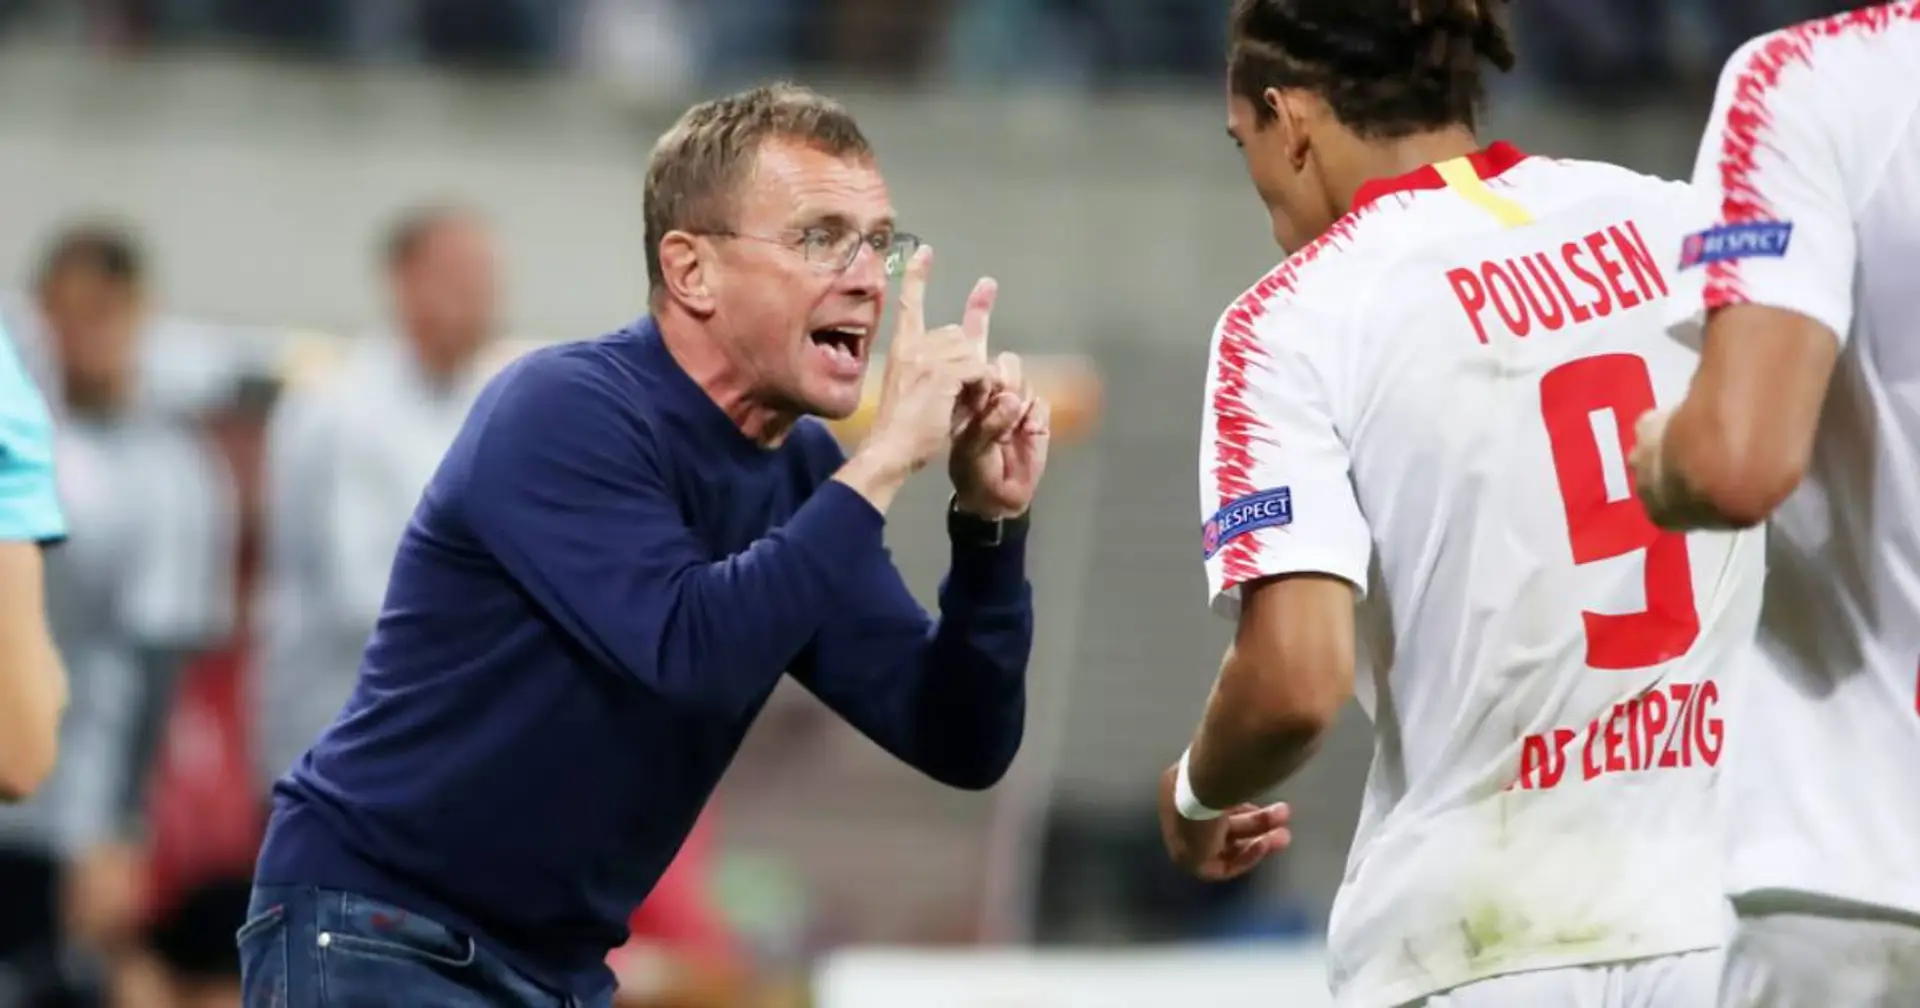 Poulsen traut Rangnick Bayern-Job zu: "Er hat einfach Qualität und macht jede Mannschaft besser"